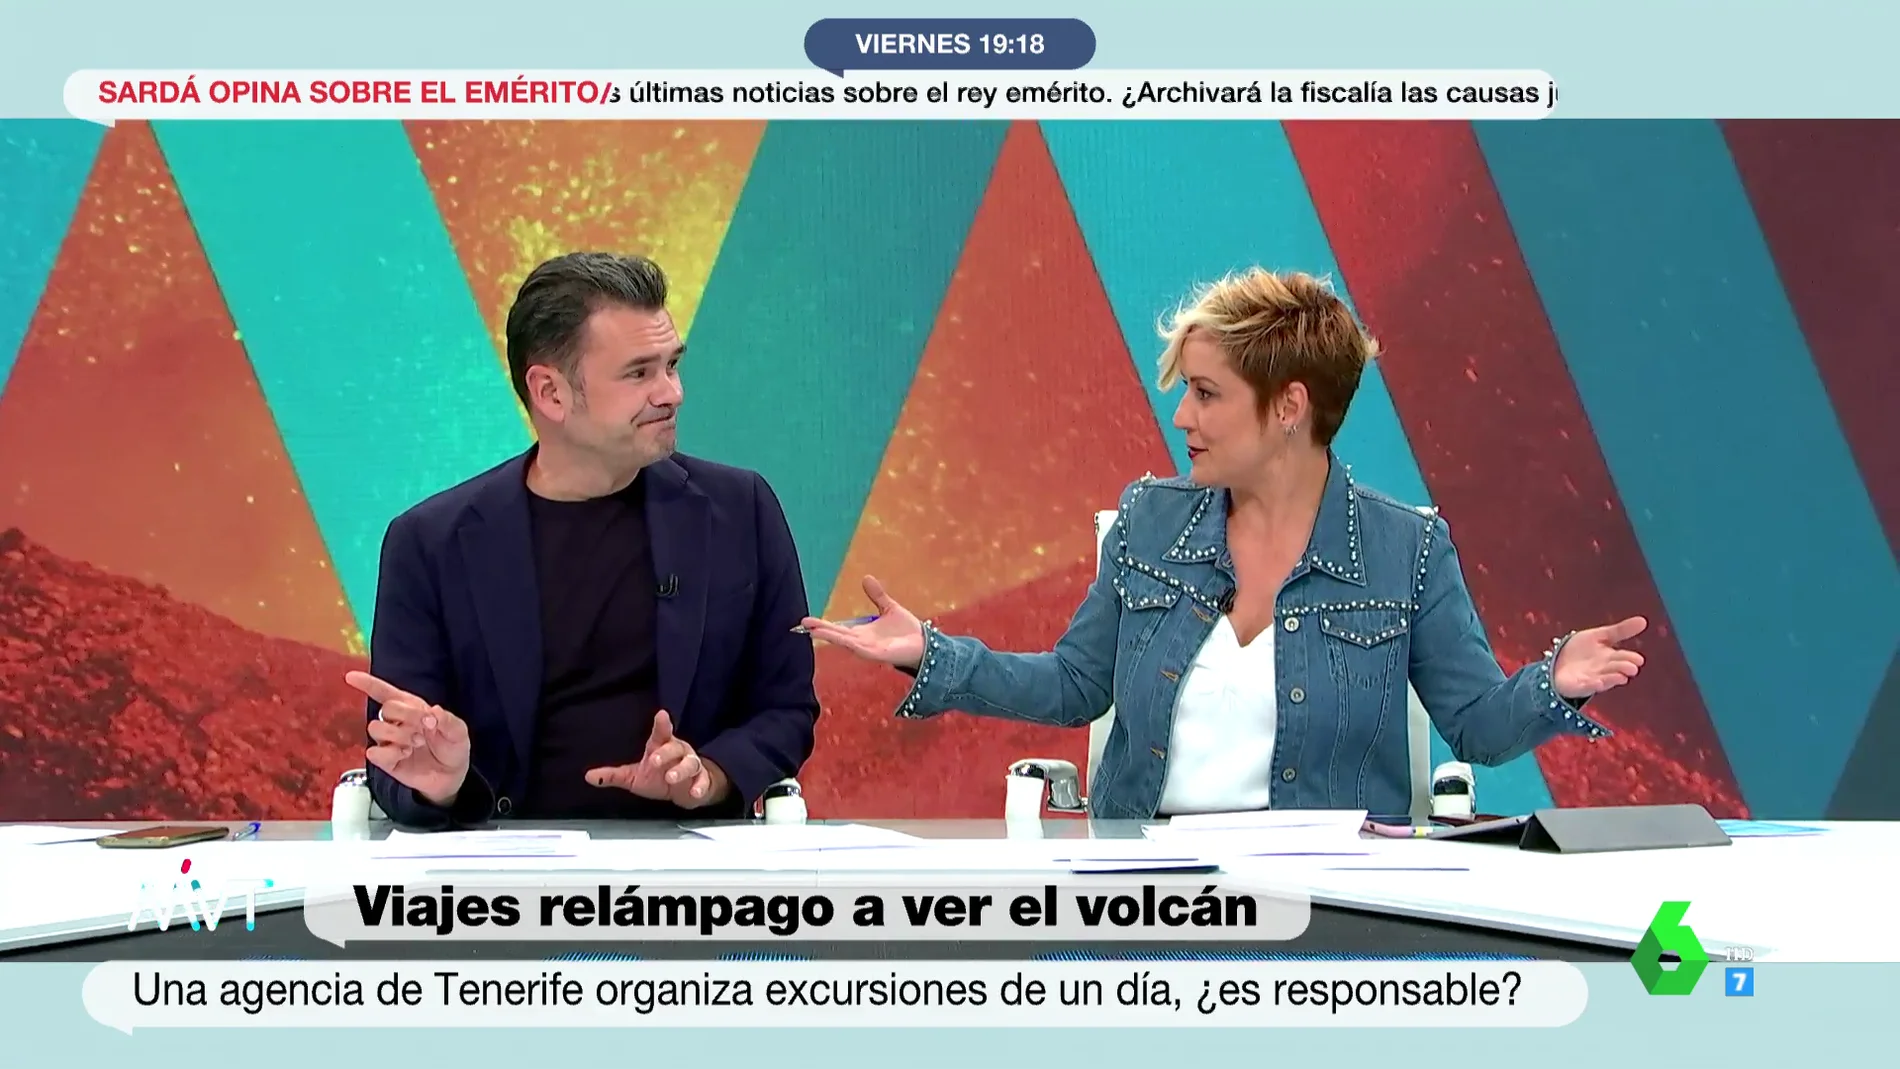 Cristina Pardo bromea al fallar una conexión en directo: "A ver si se han ido de puente nuestros invitados"